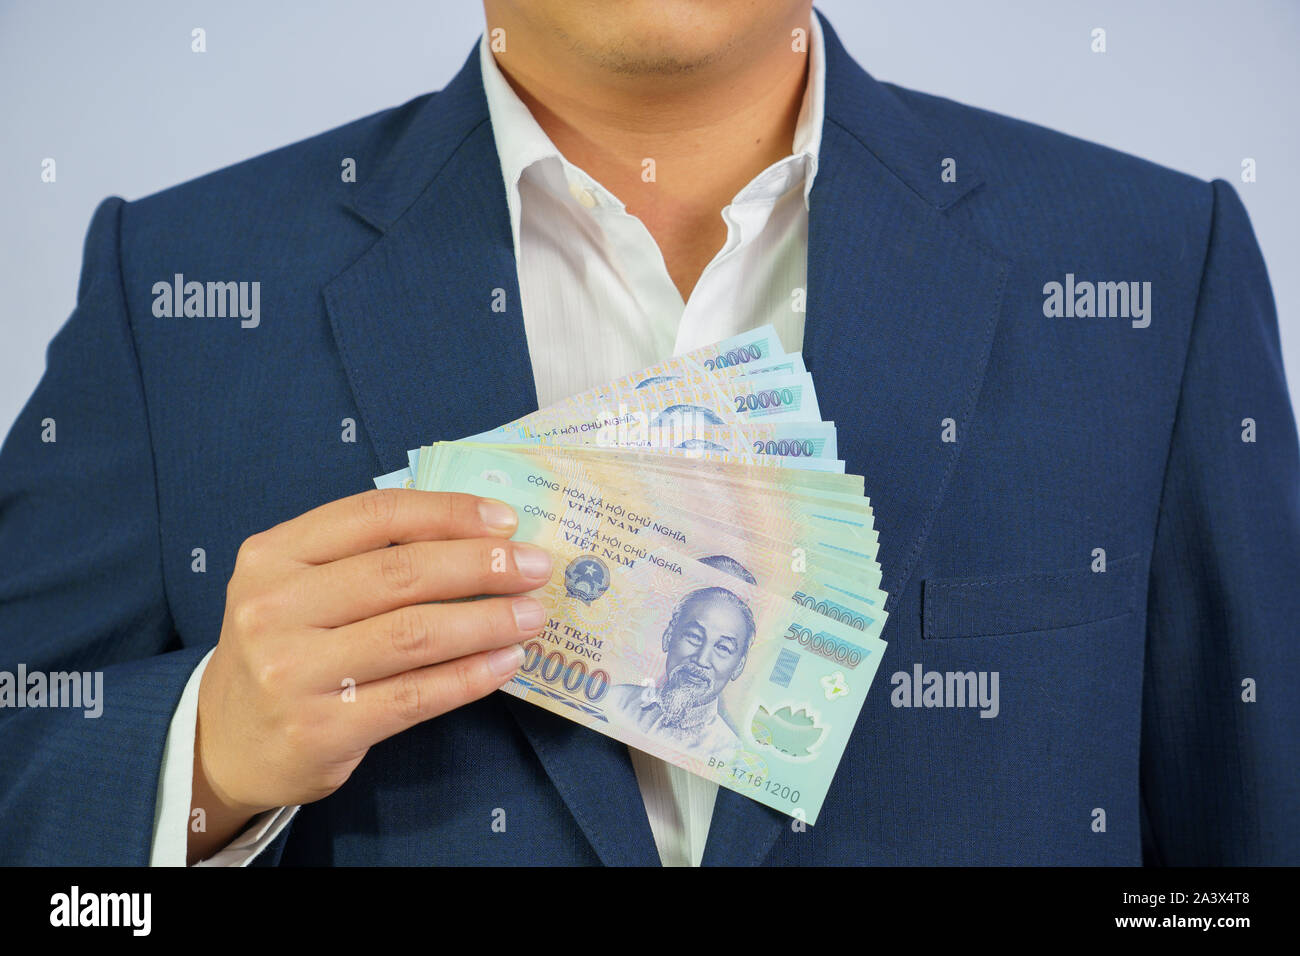 Argent au Vietnam tenir en main business homme portant un costume bleu (République socialiste du Viêt Nam), Dong, VND, payer, l'échange de l'argent sur les vietnamiens bac blanc Banque D'Images